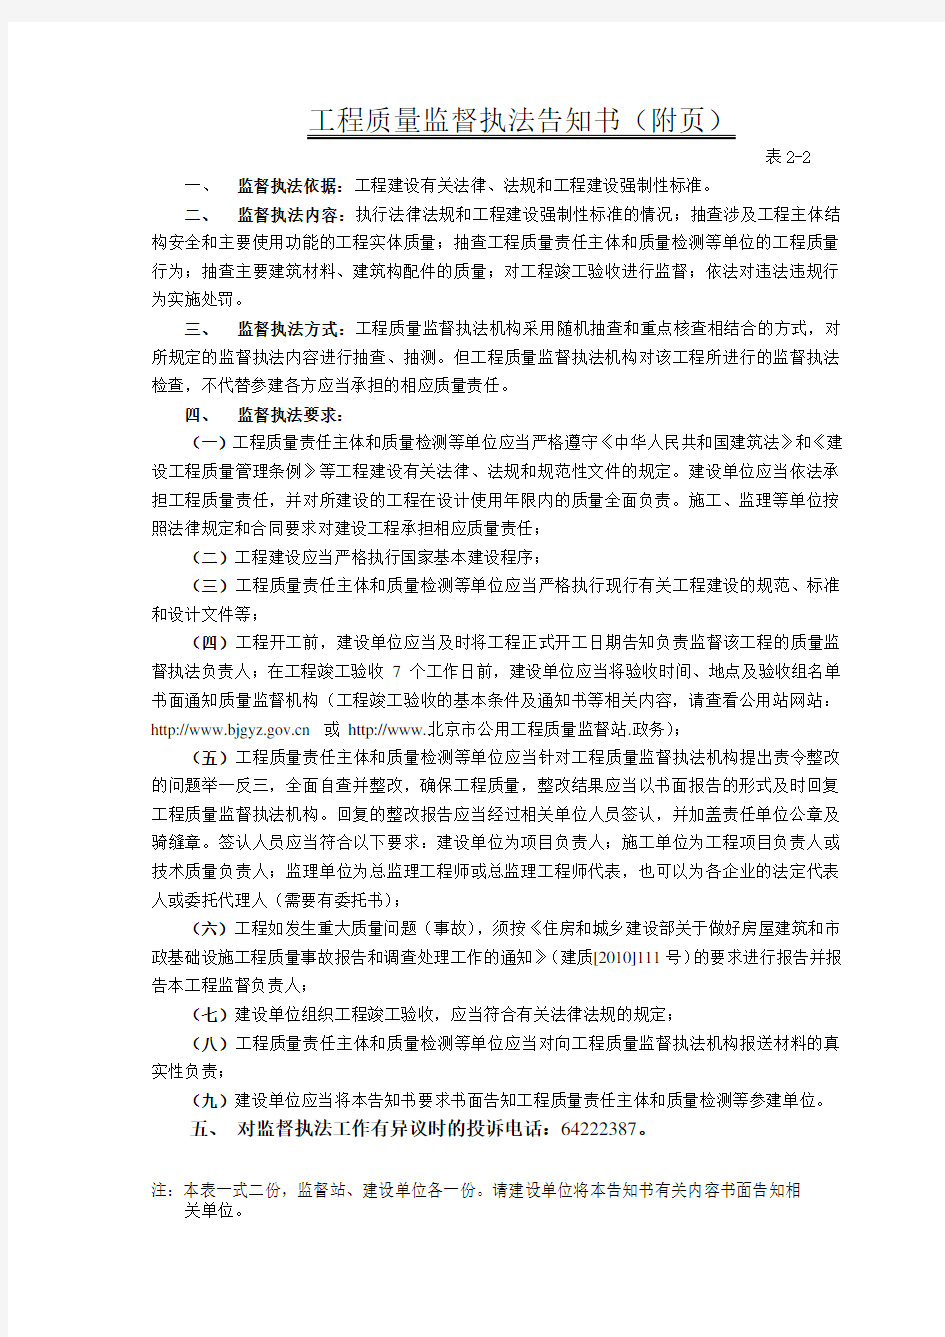 【质量管理】北京市建设工程质量监督执法告知书